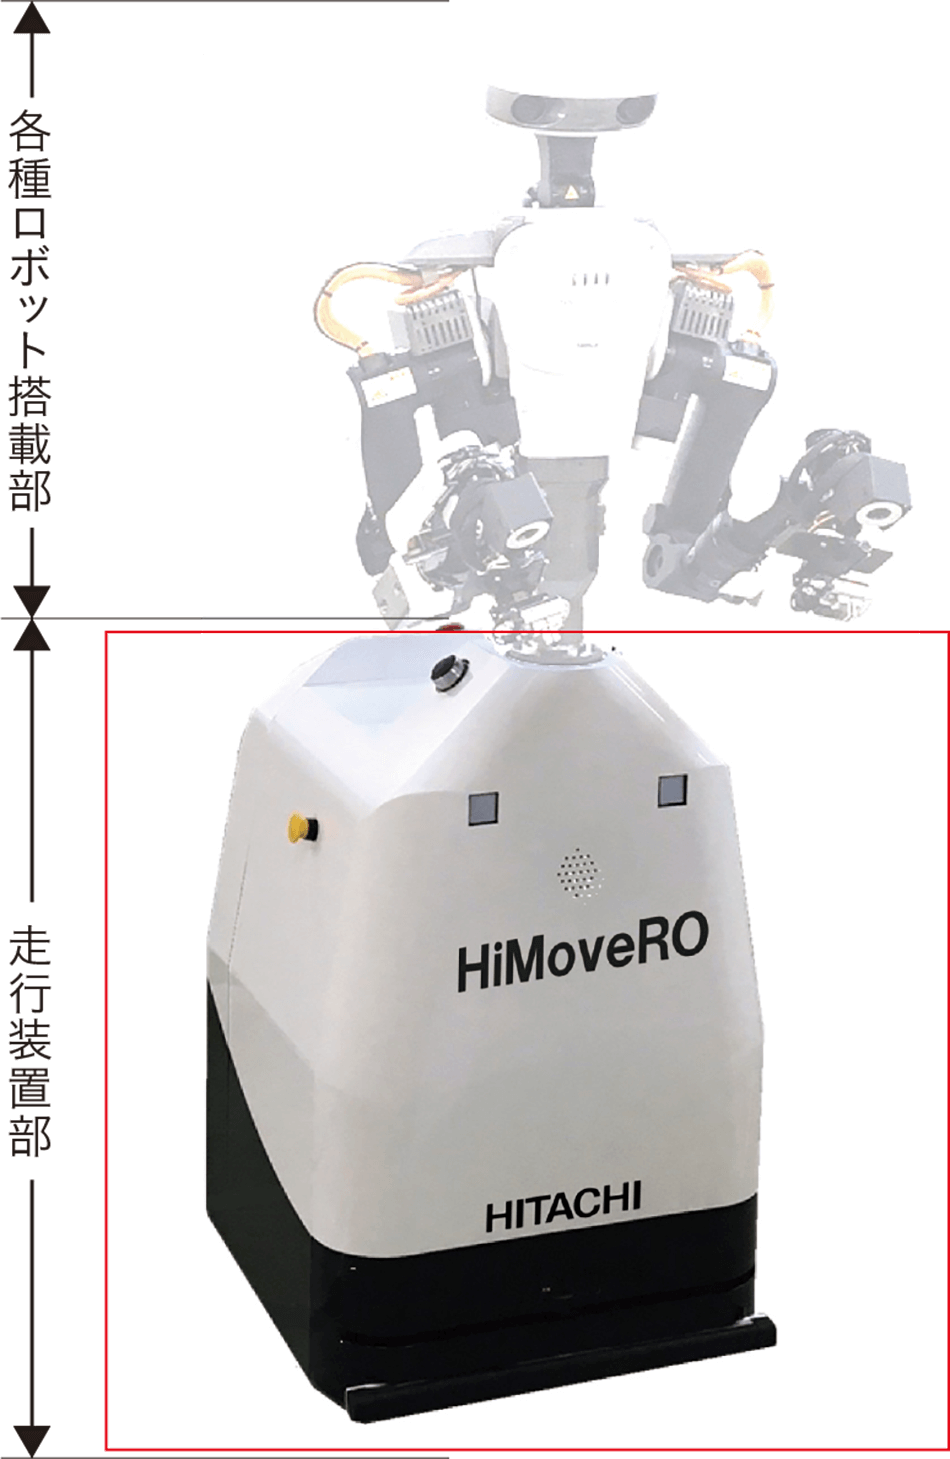 カワダロボティクス株式会社製の双腕型ロボットを搭載したHiMoveRO